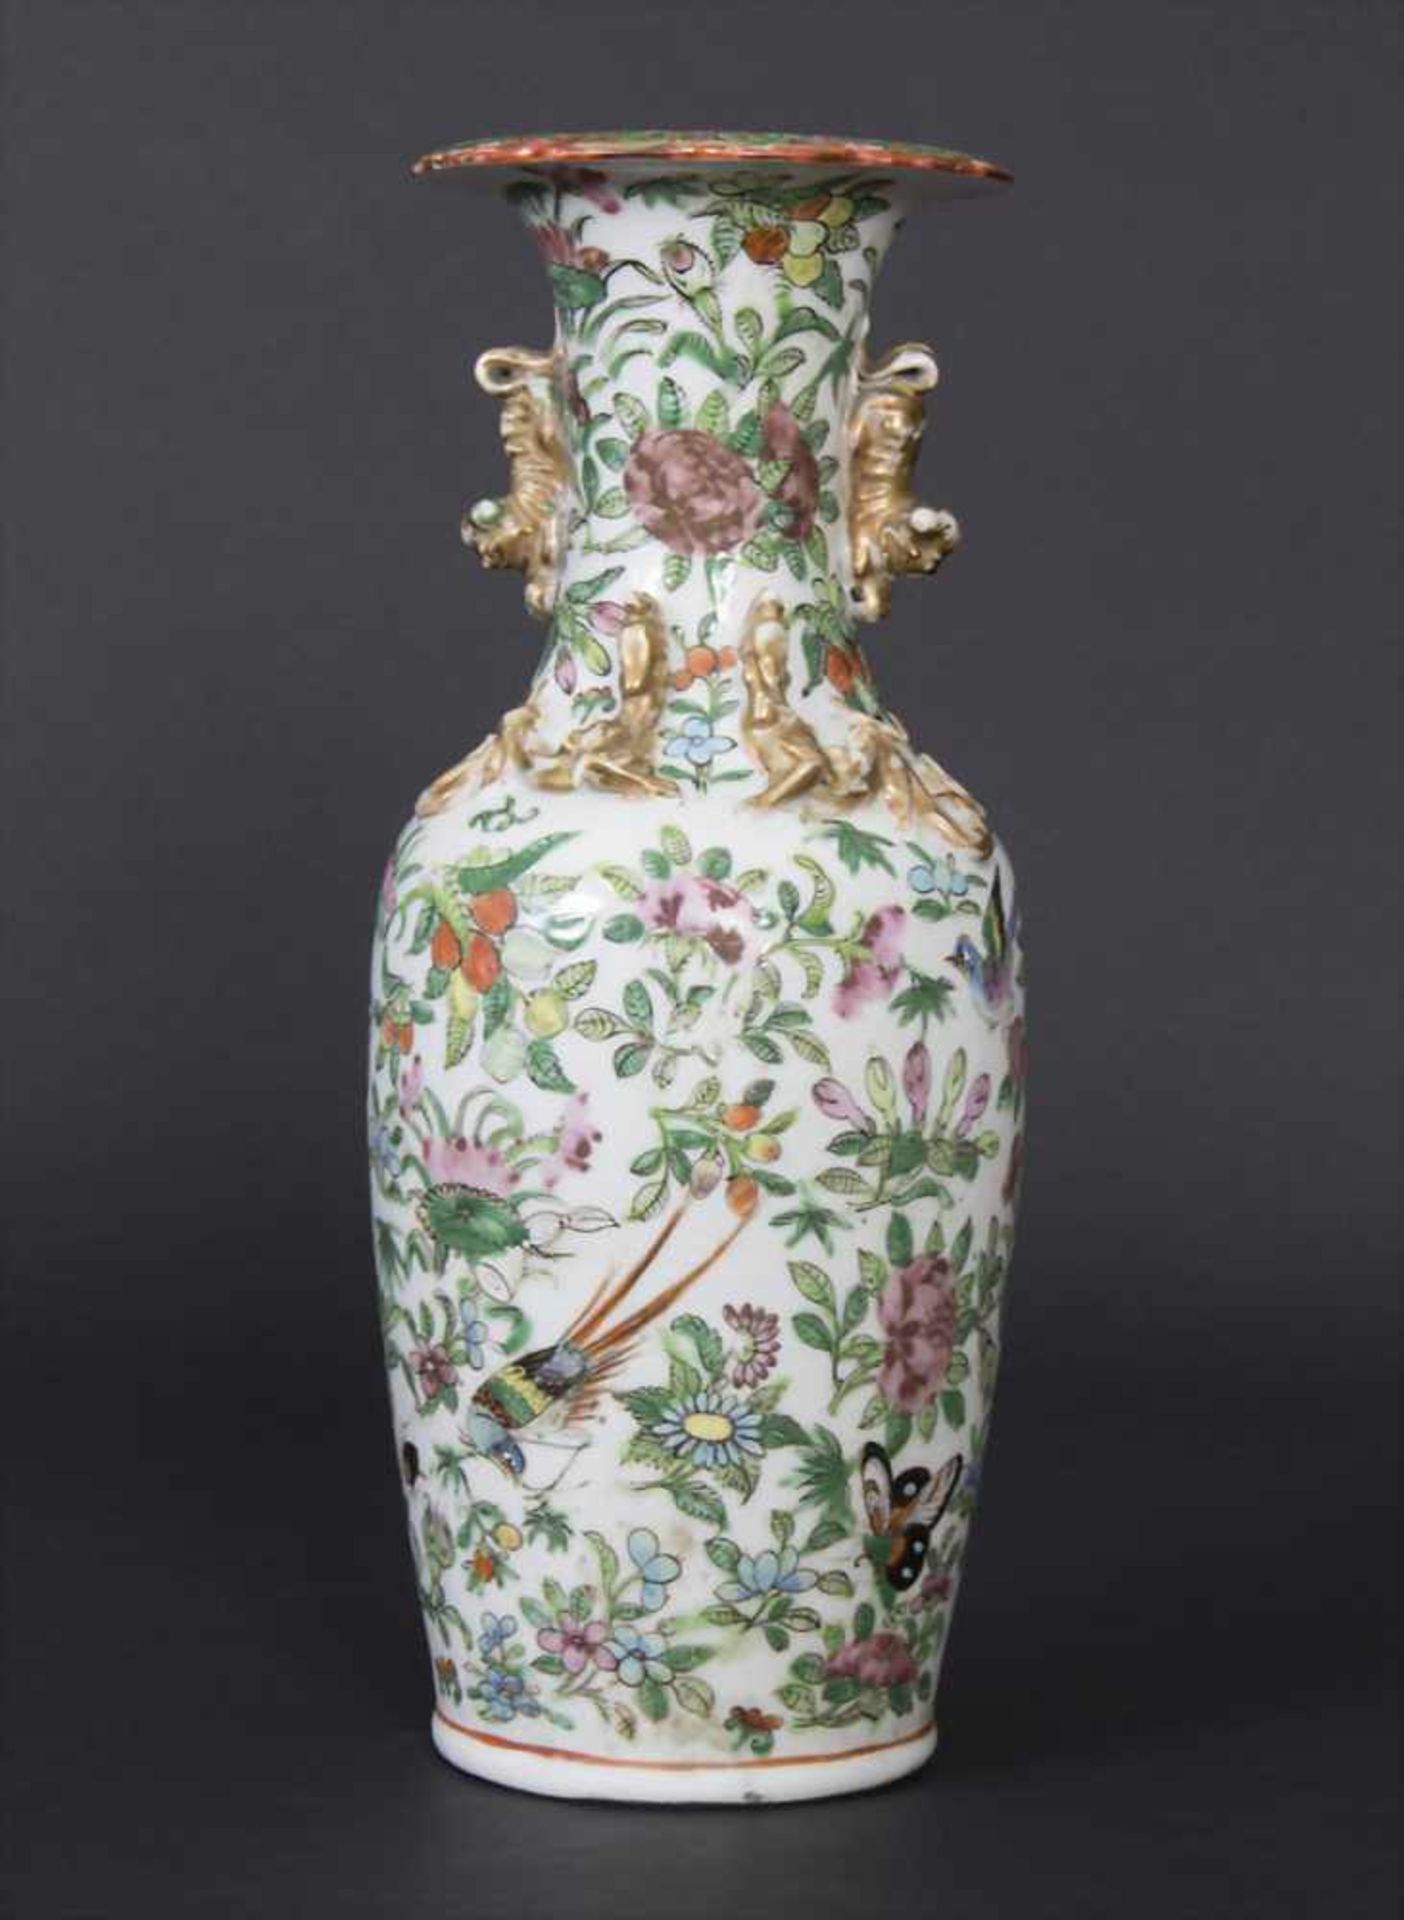 Kantonvase 'Familie Rose Dekor', China um 1900Material: Porzellan polychrome bemalt mit Blüten und